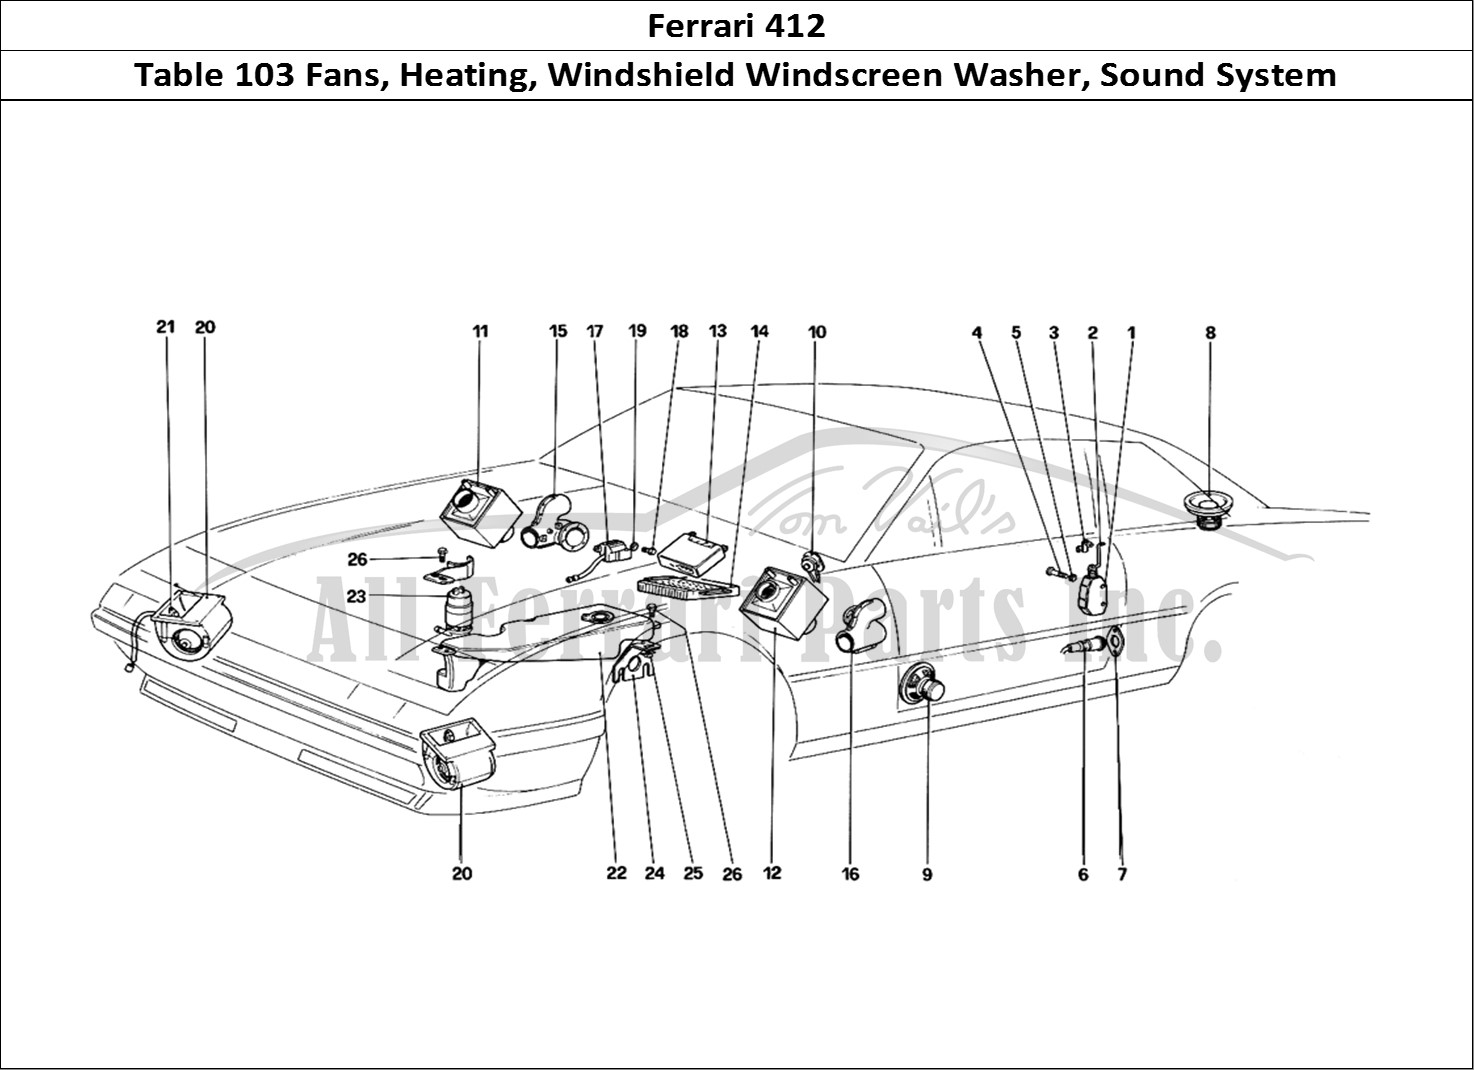 Ferrari Parts Ferrari 412 (Mechanical) Page 103 Cooling Electric Fans - H